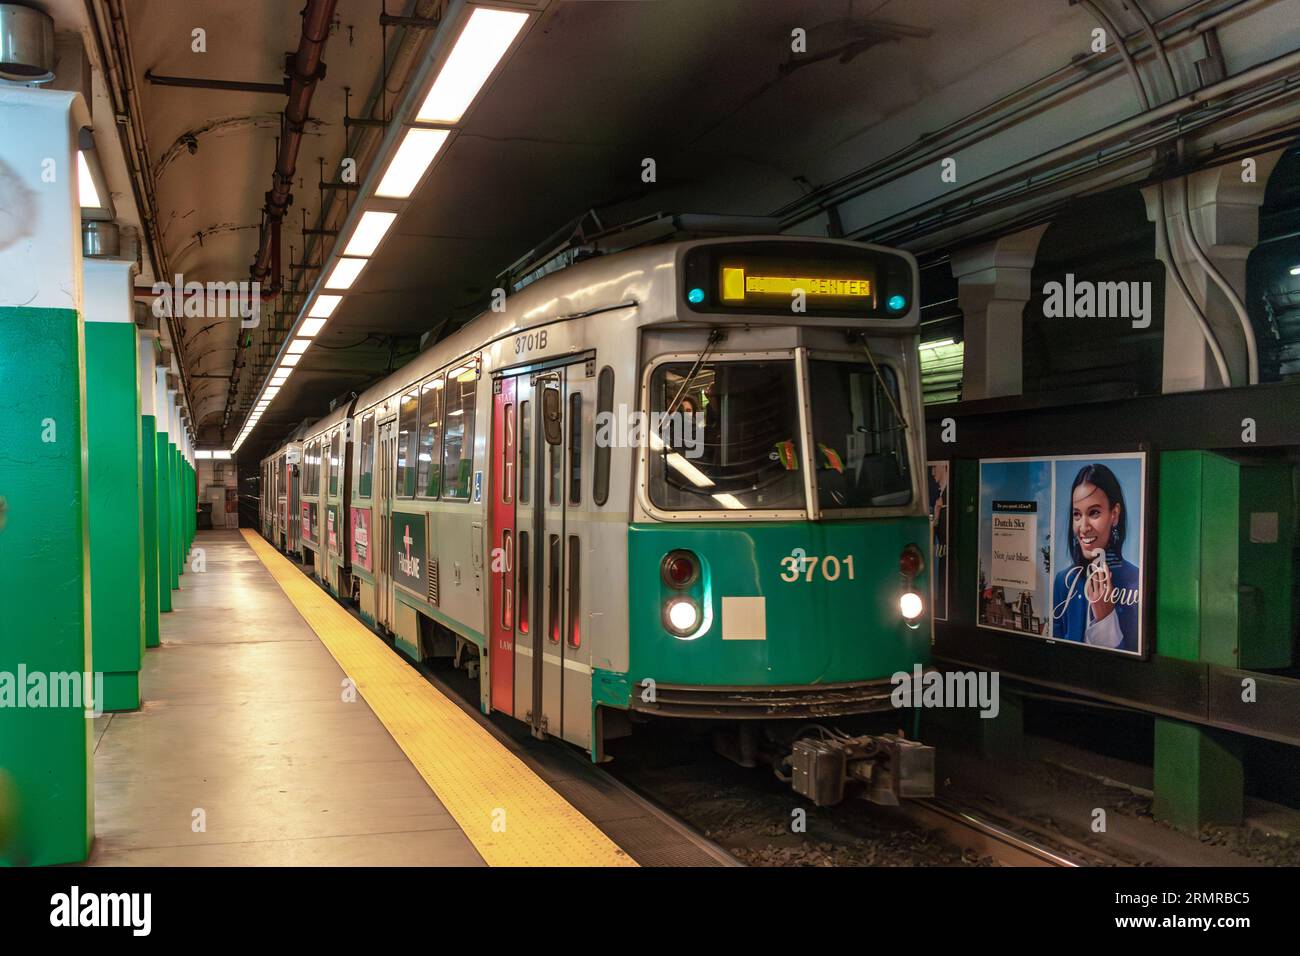 Un tram della metropolitana MBTA 'T Line' di Boston n. 3701 sulla linea verde arriva in una stazione tranquilla Foto Stock